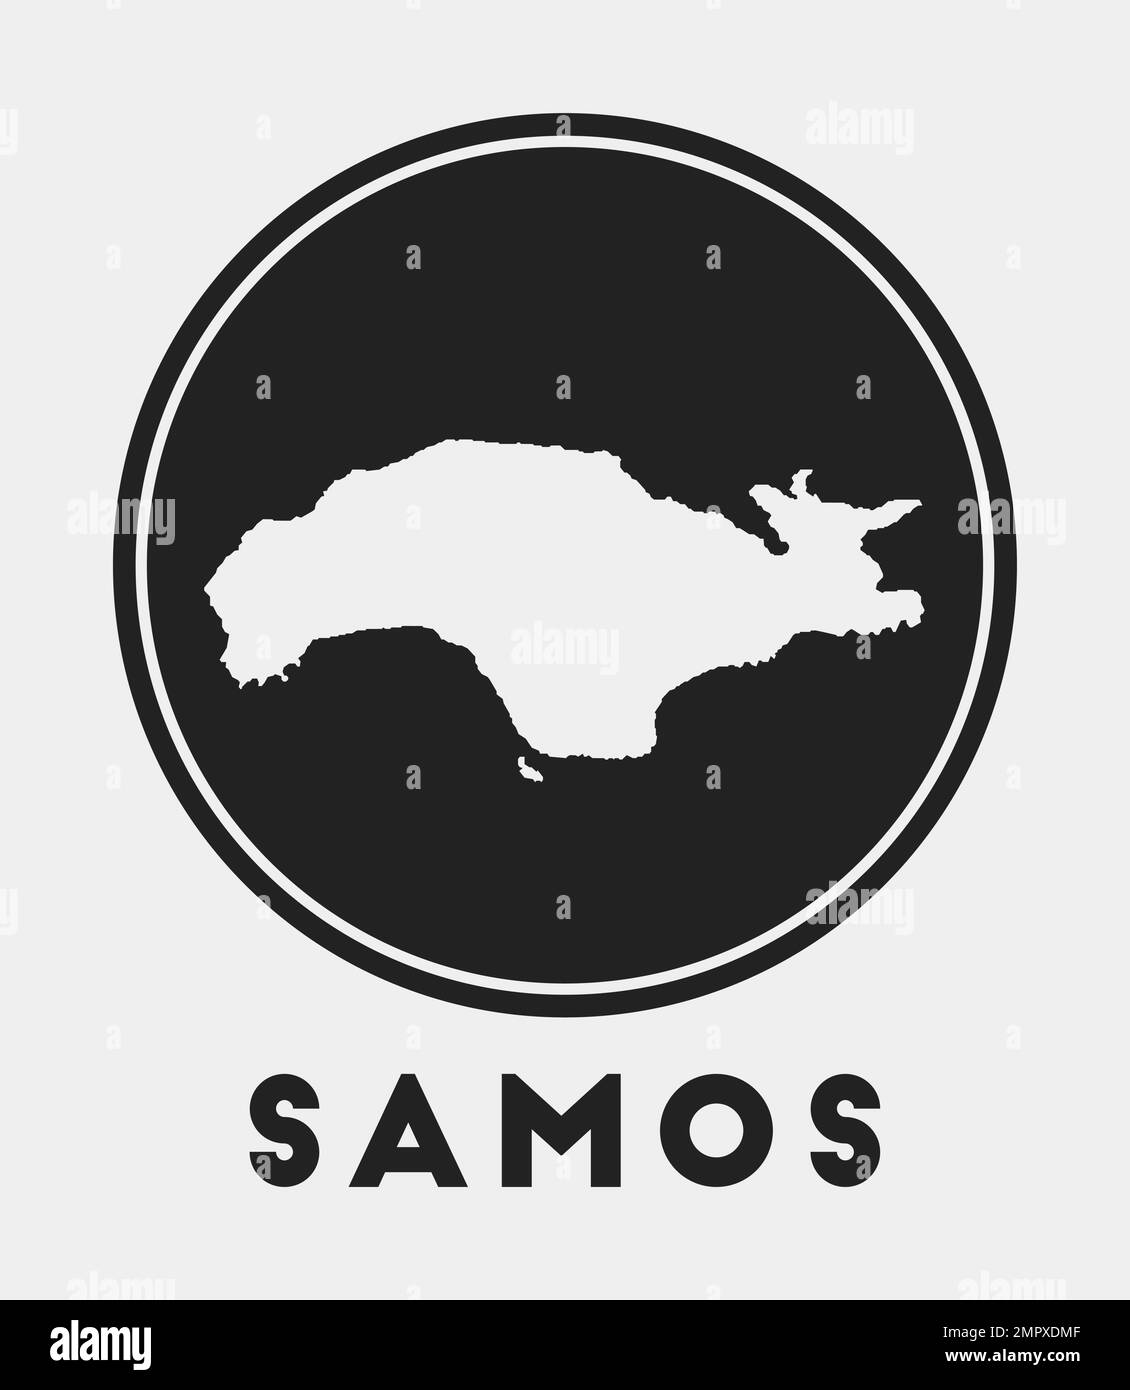 Samos icon. Round logo with island map and title. Stylish Samos badge ...